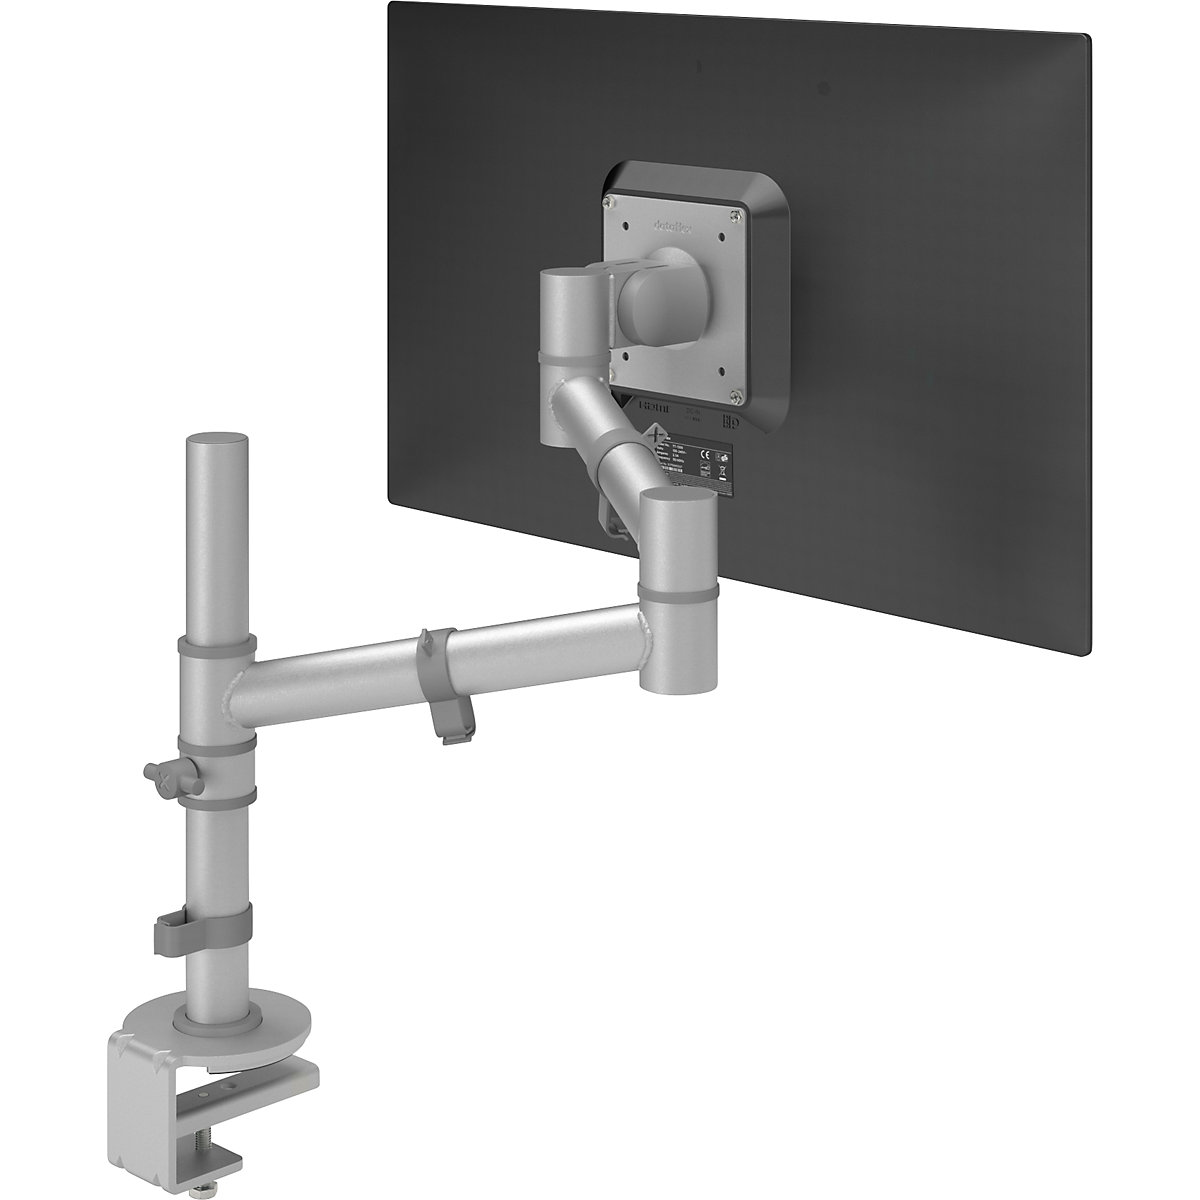 Uchwyt do monitora VIEWGO – Dataflex, pojedynczy uchwyt na 1 monitor, srebrny-11